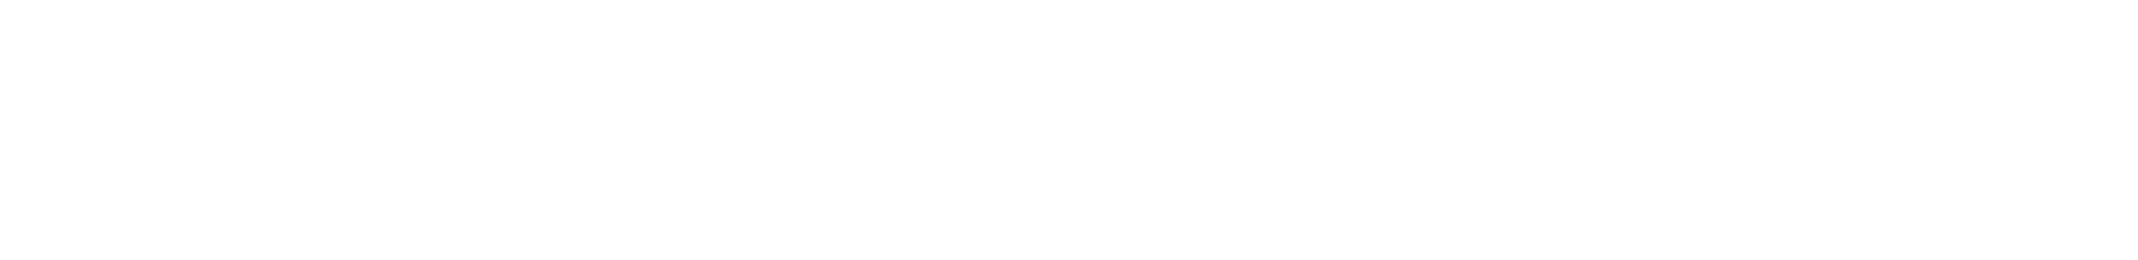 guy carpenter logo